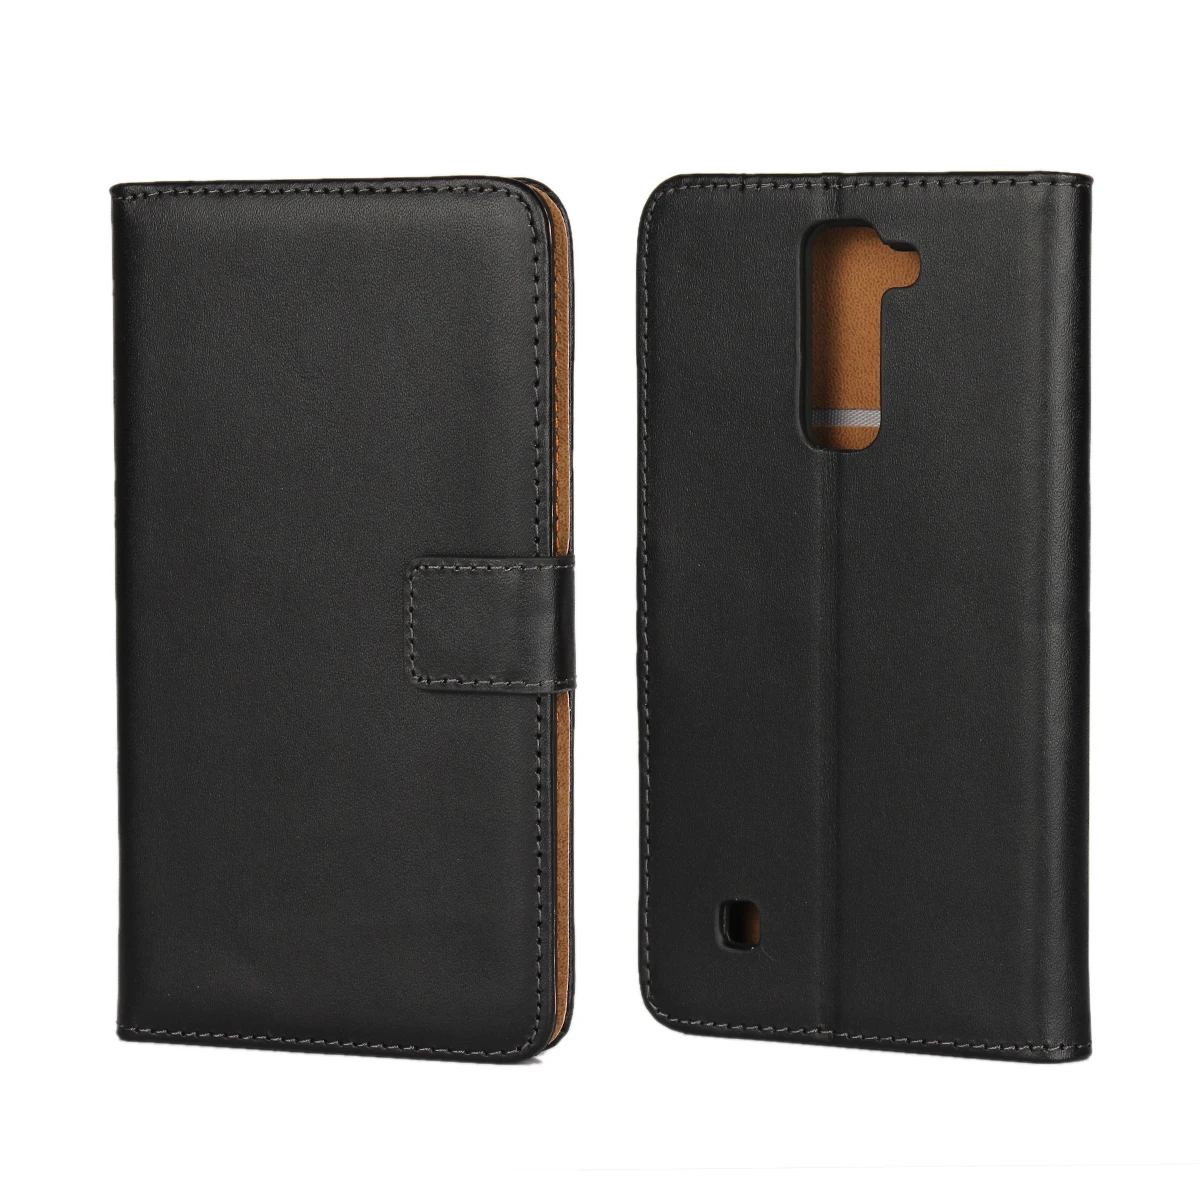 Премиум кожаный флип-чехол Роскошный чехол-портмоне для LG Stylus 2 5," держатель для карт чехол для телефона GG - Цвет: Черный